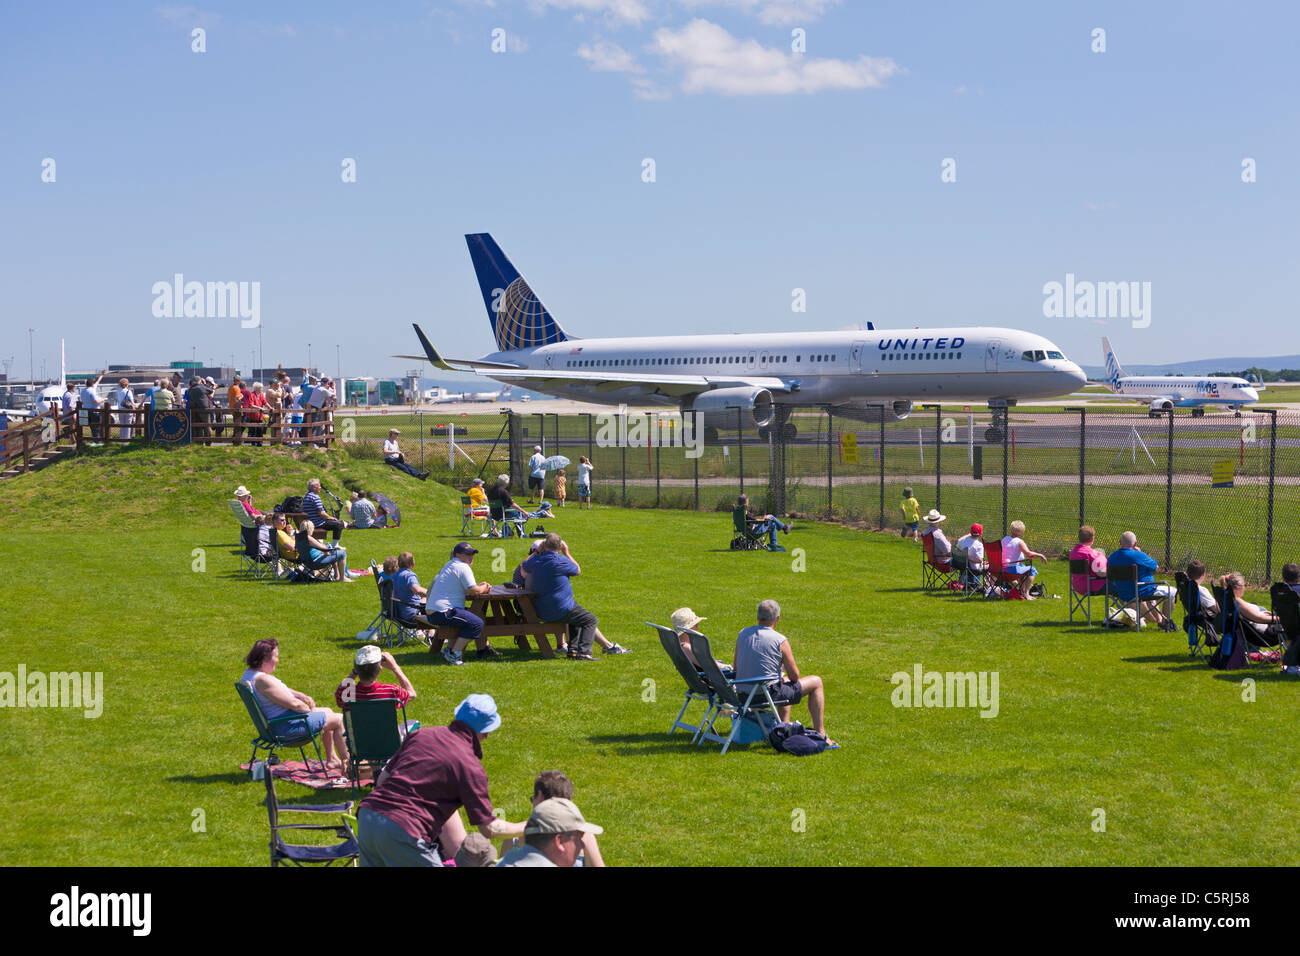 United Airlines piano, visualizzazione aerea Park, l'aeroporto di Manchester, Inghilterra Foto Stock